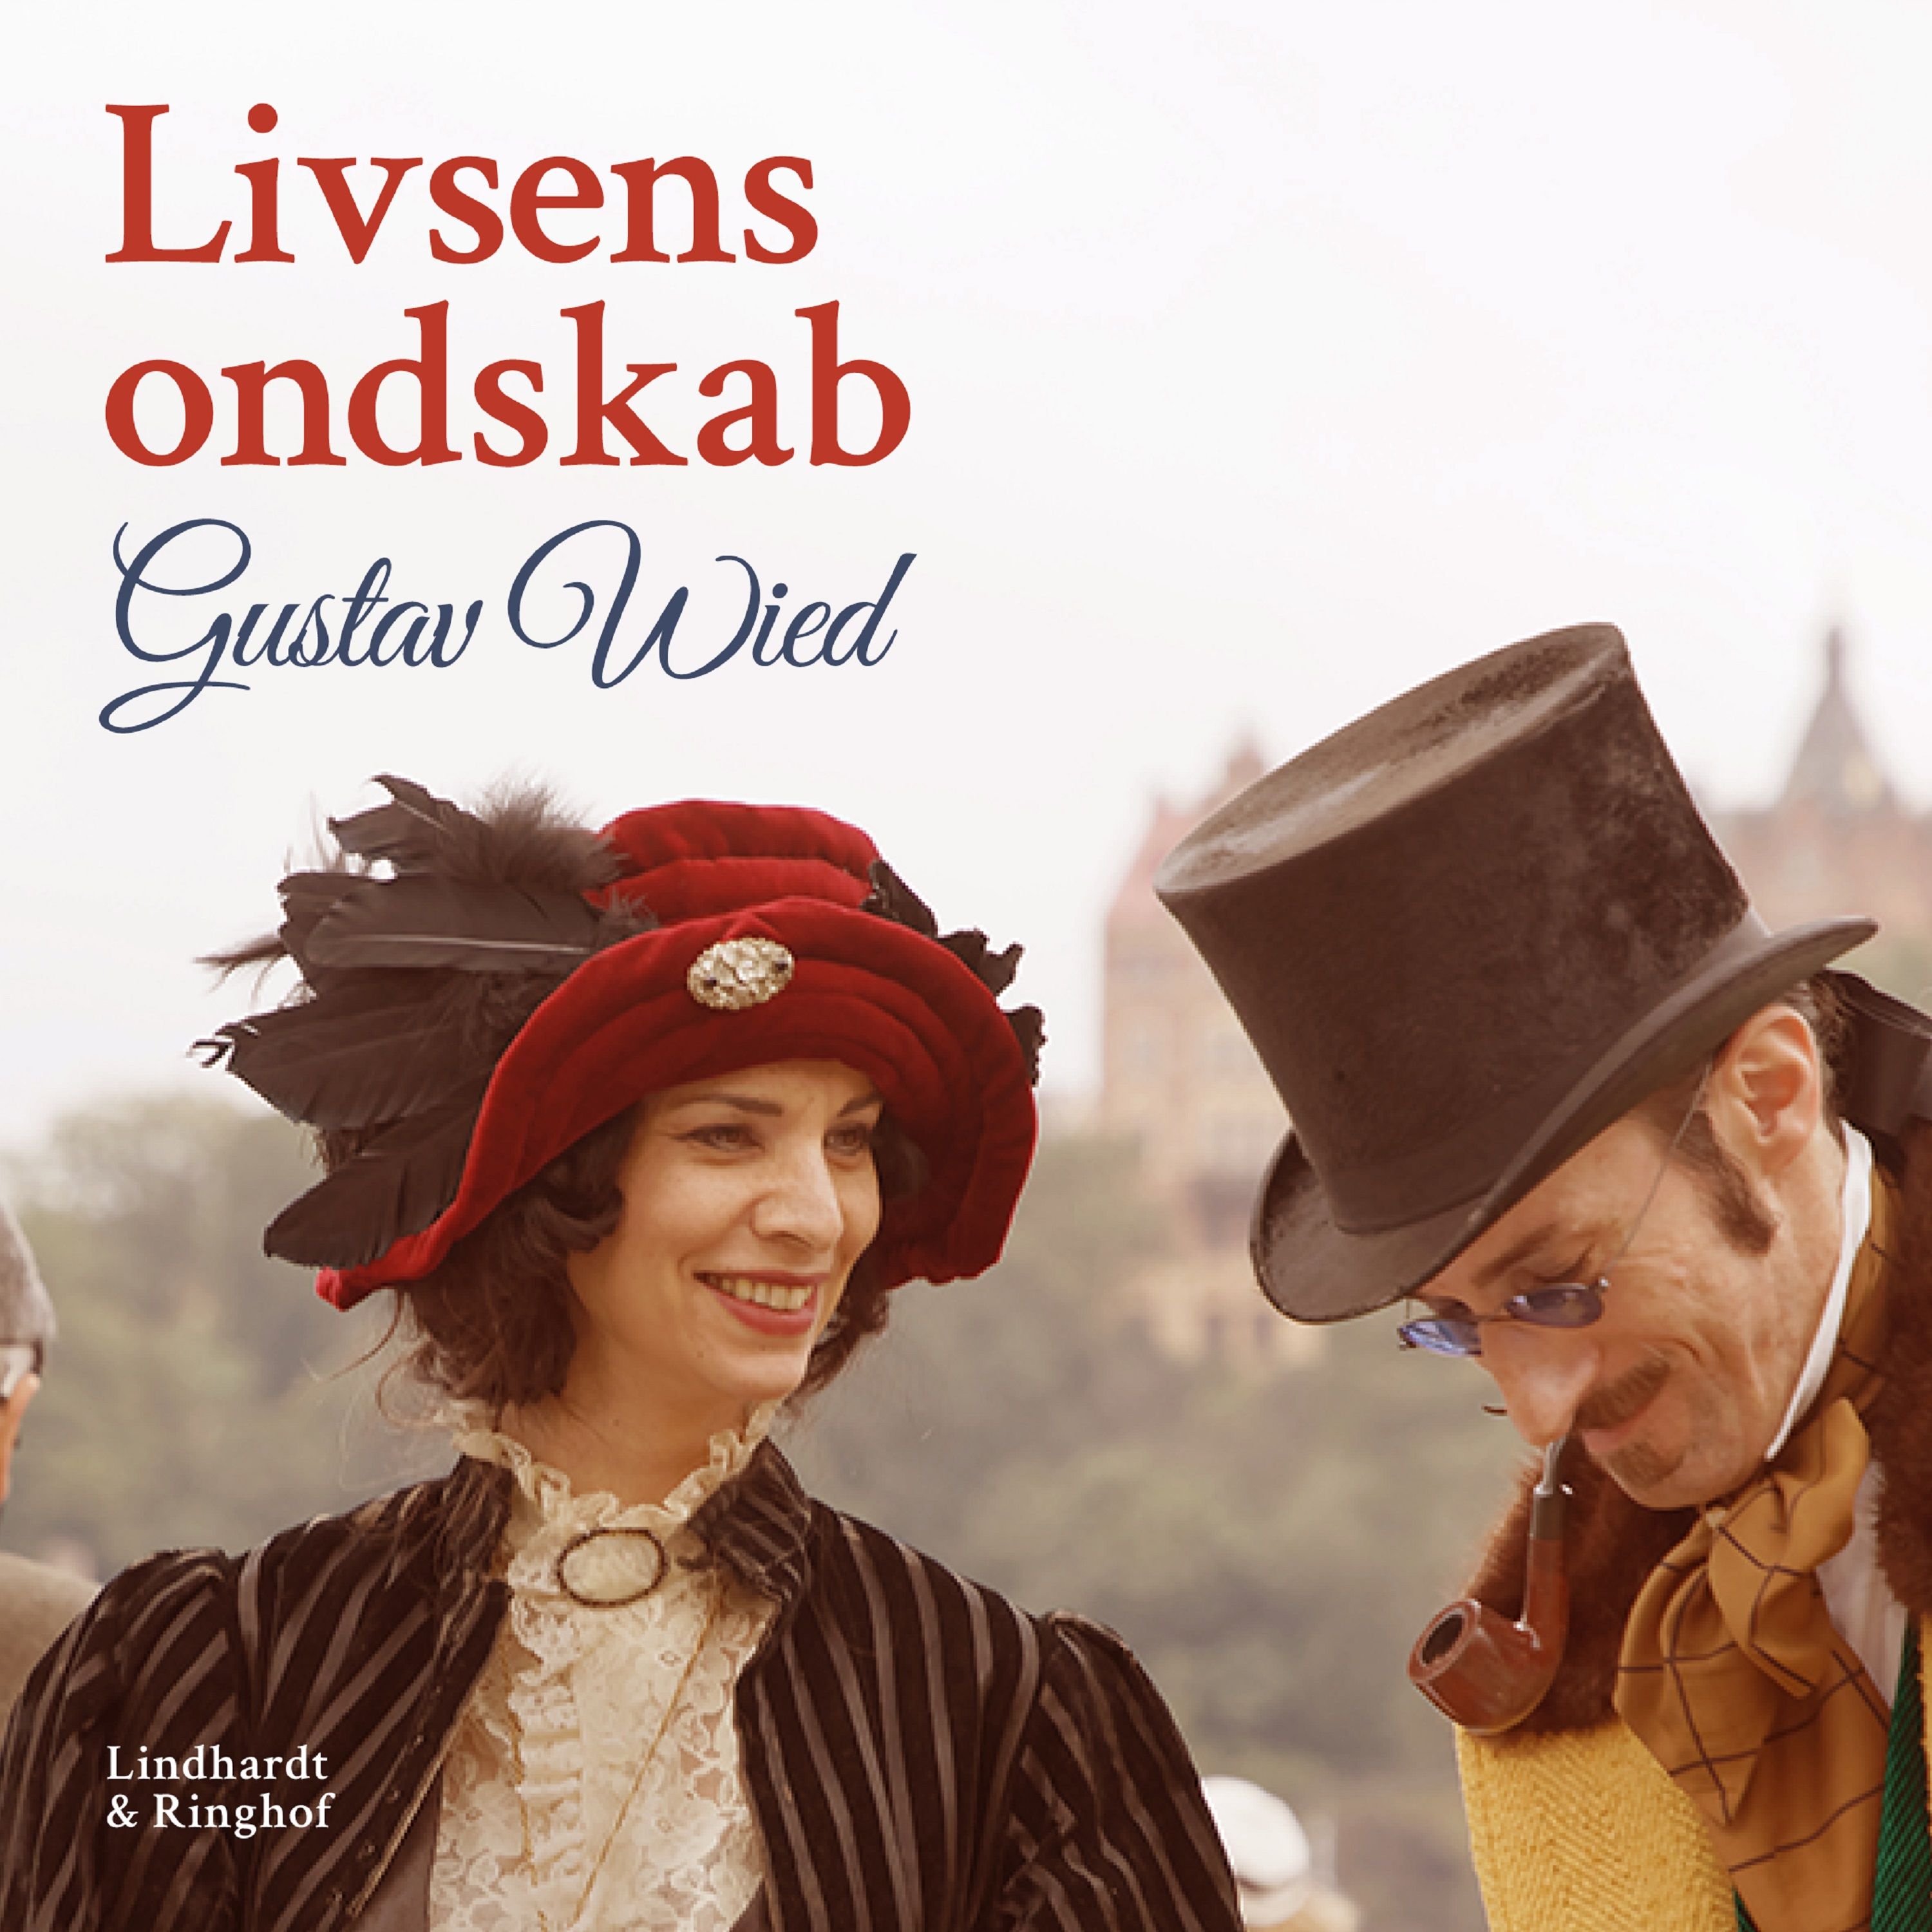 Livsens ondskab, lydbog af Gustav Wied